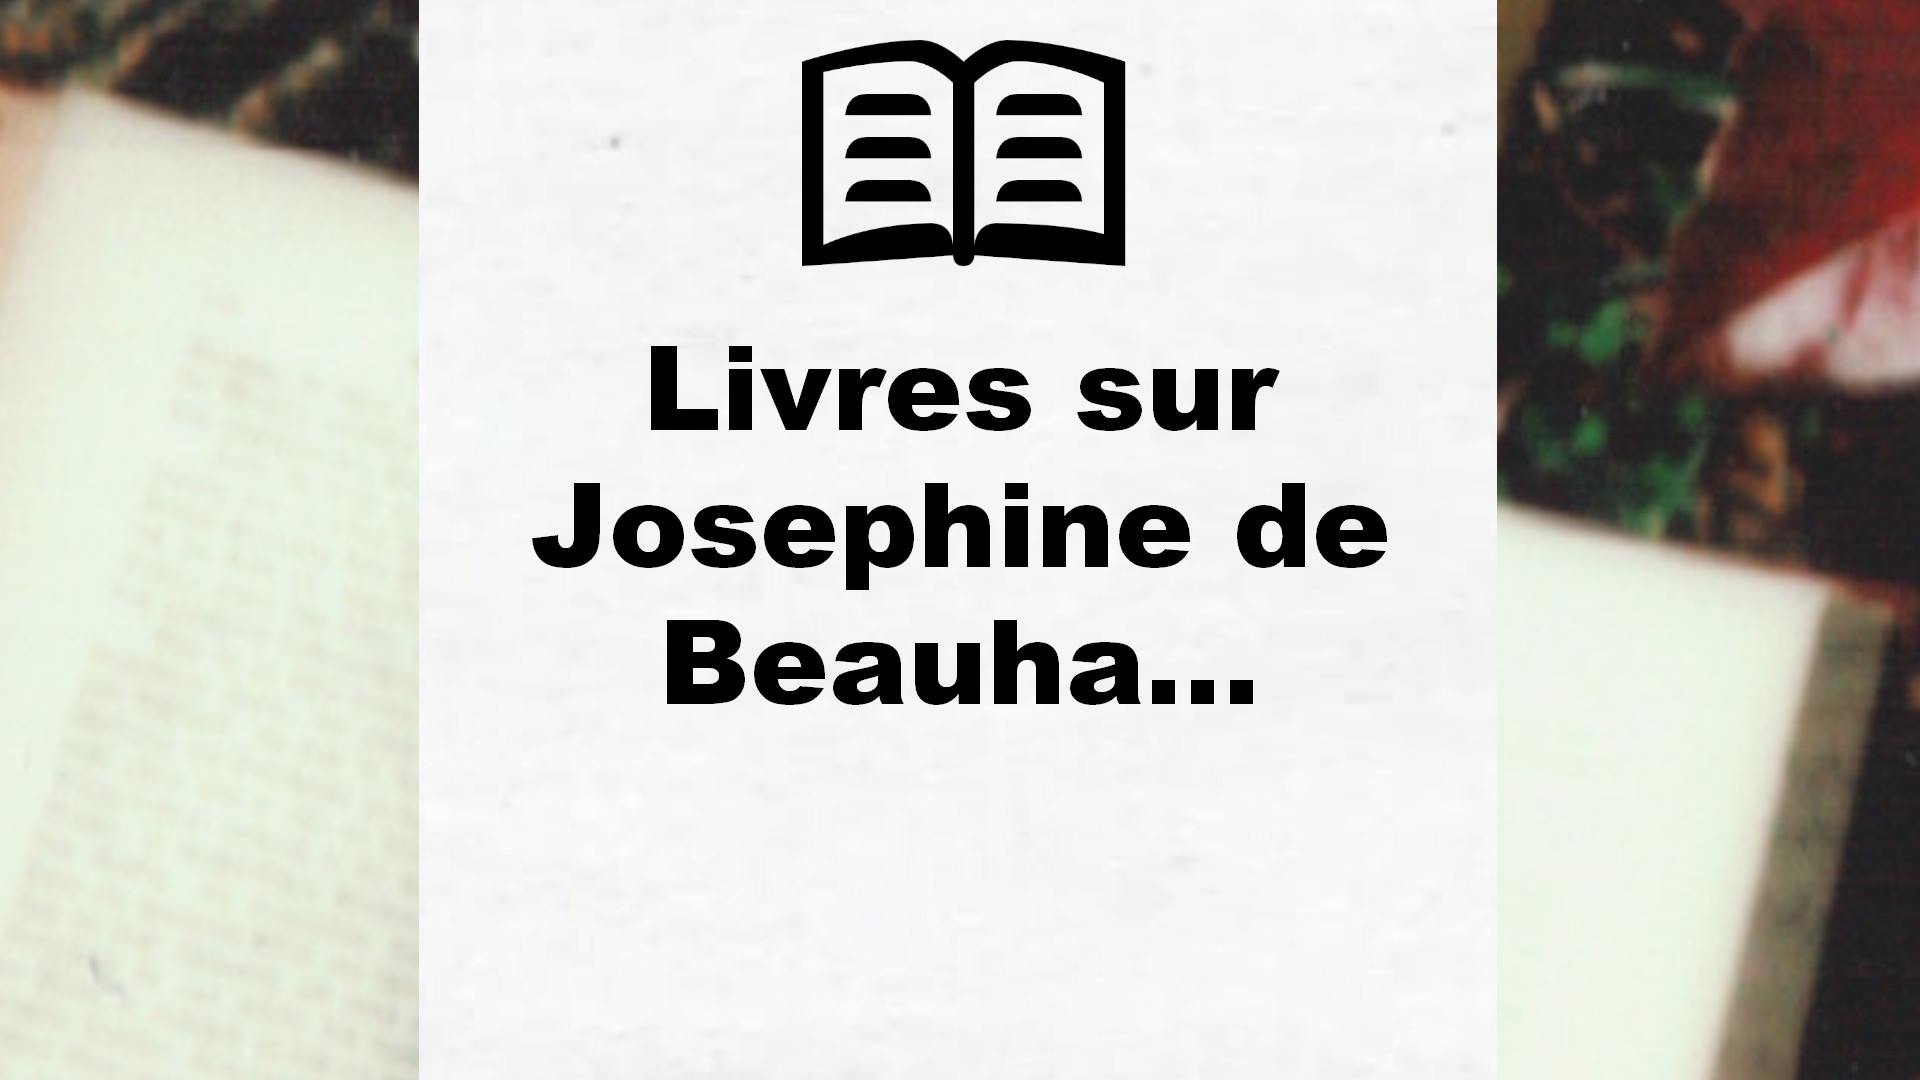 Livres sur Josephine de Beauharnais